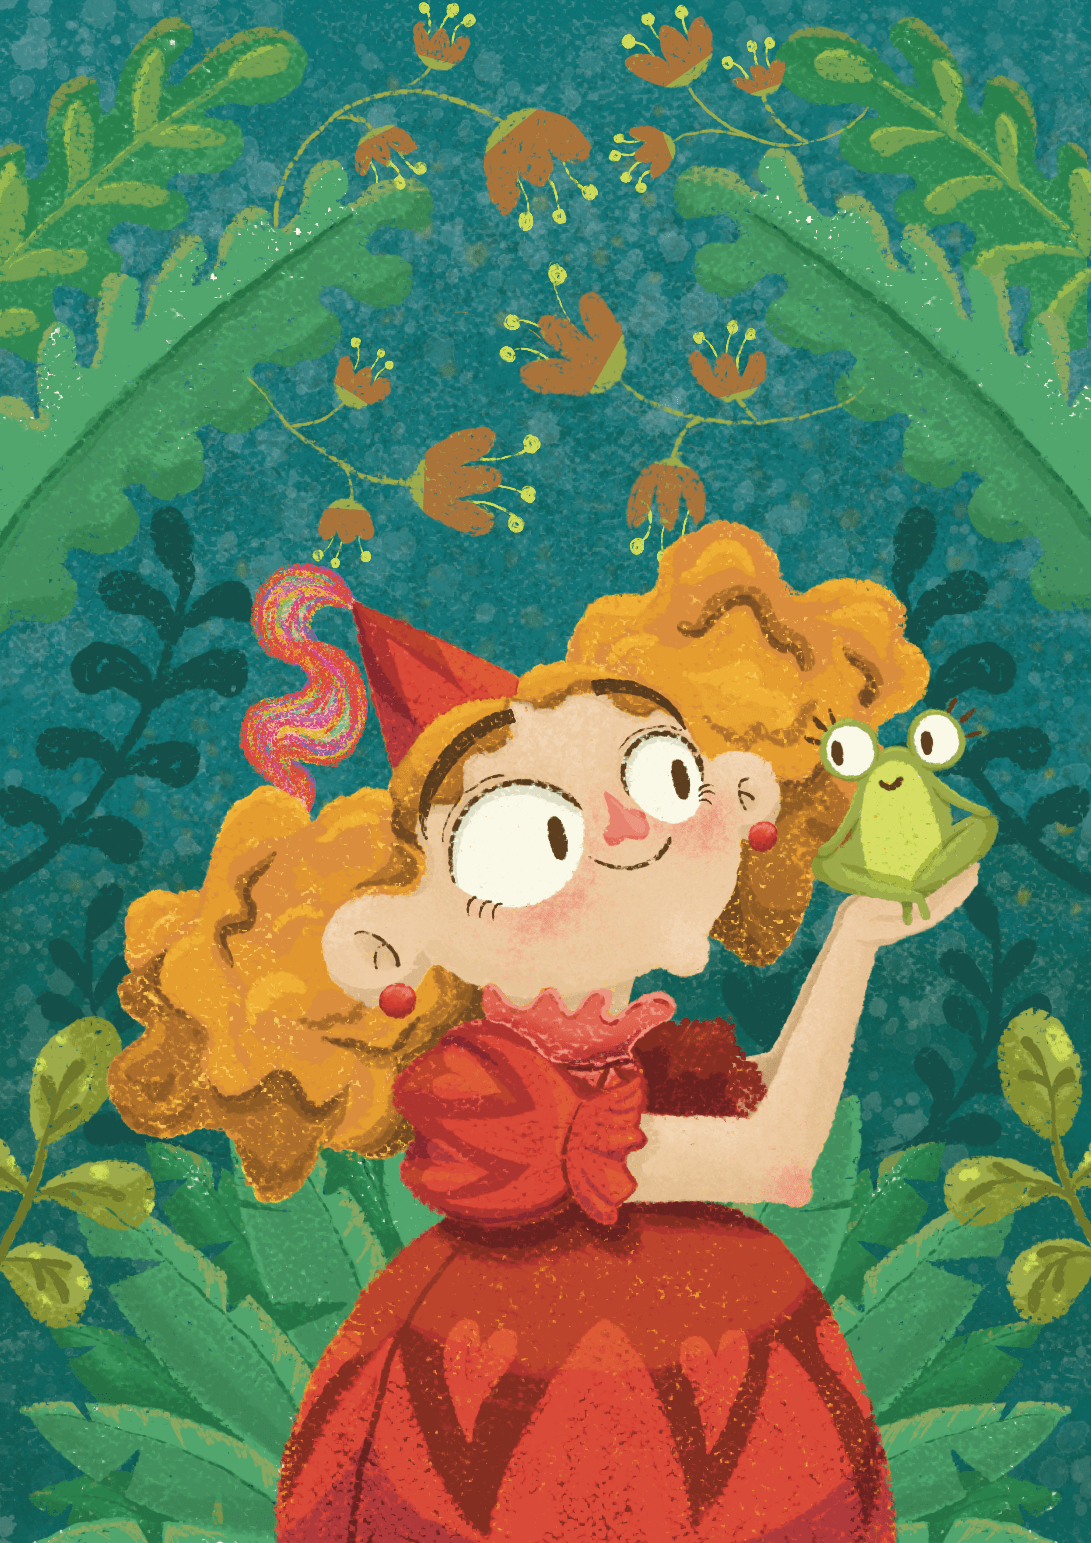 Dtys Princess brendabossato drawthisinyourstyle children's book children illustration frog